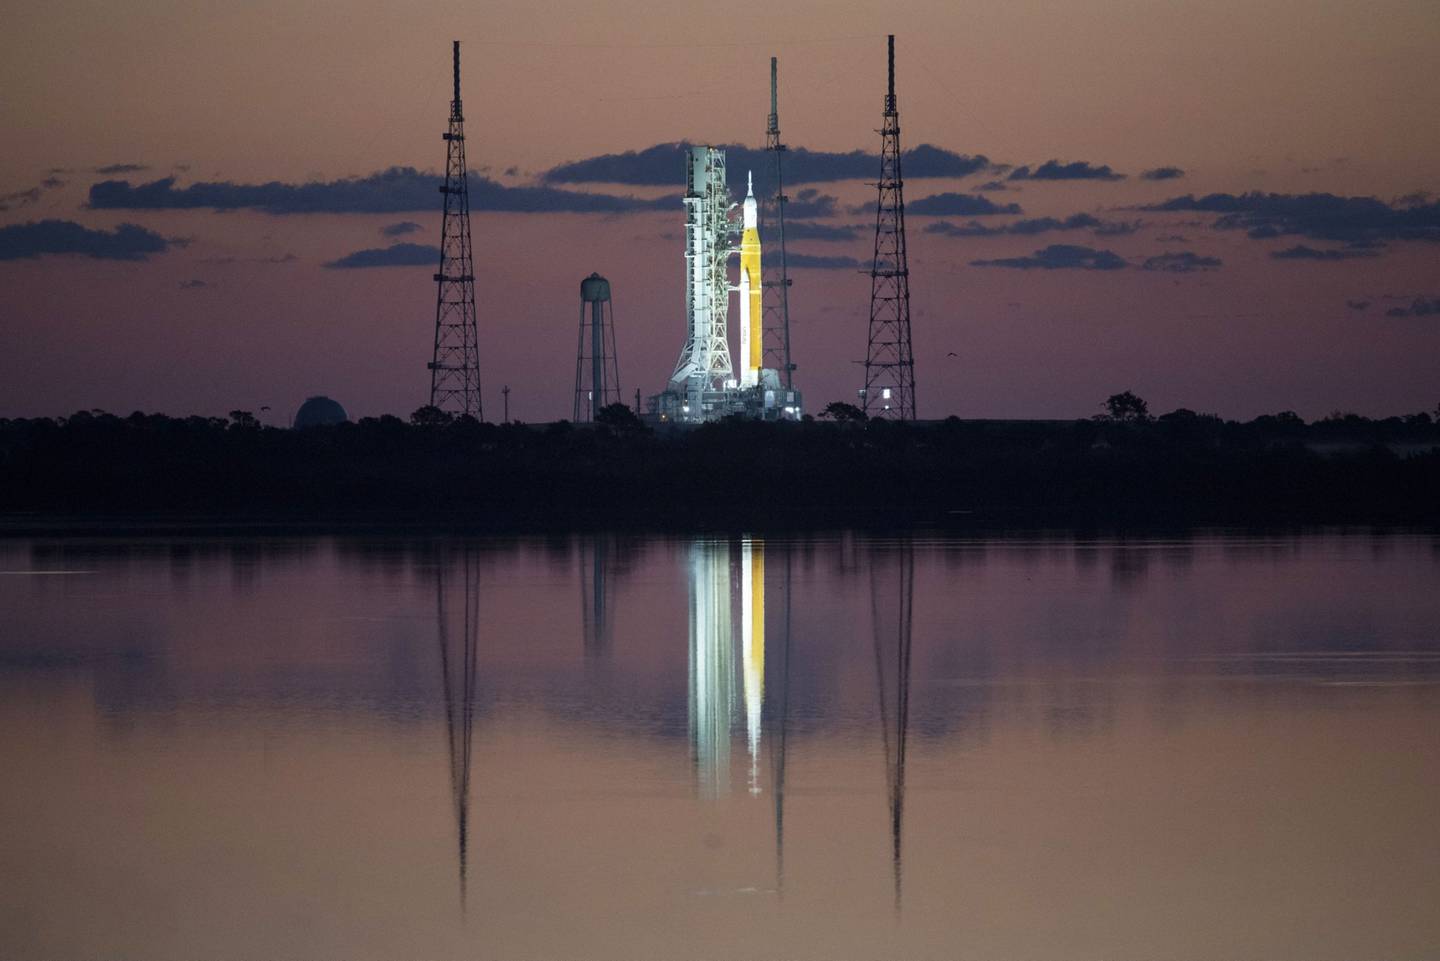 El cohete Space Launch System de la NASA, en el Centro Espacial Kennedy de Florida, tiene previsto reanudar la exploración lunar estadounidense con el programa Artemis. Fotógrafo: Joel Kowsky/NASA/Getty Images